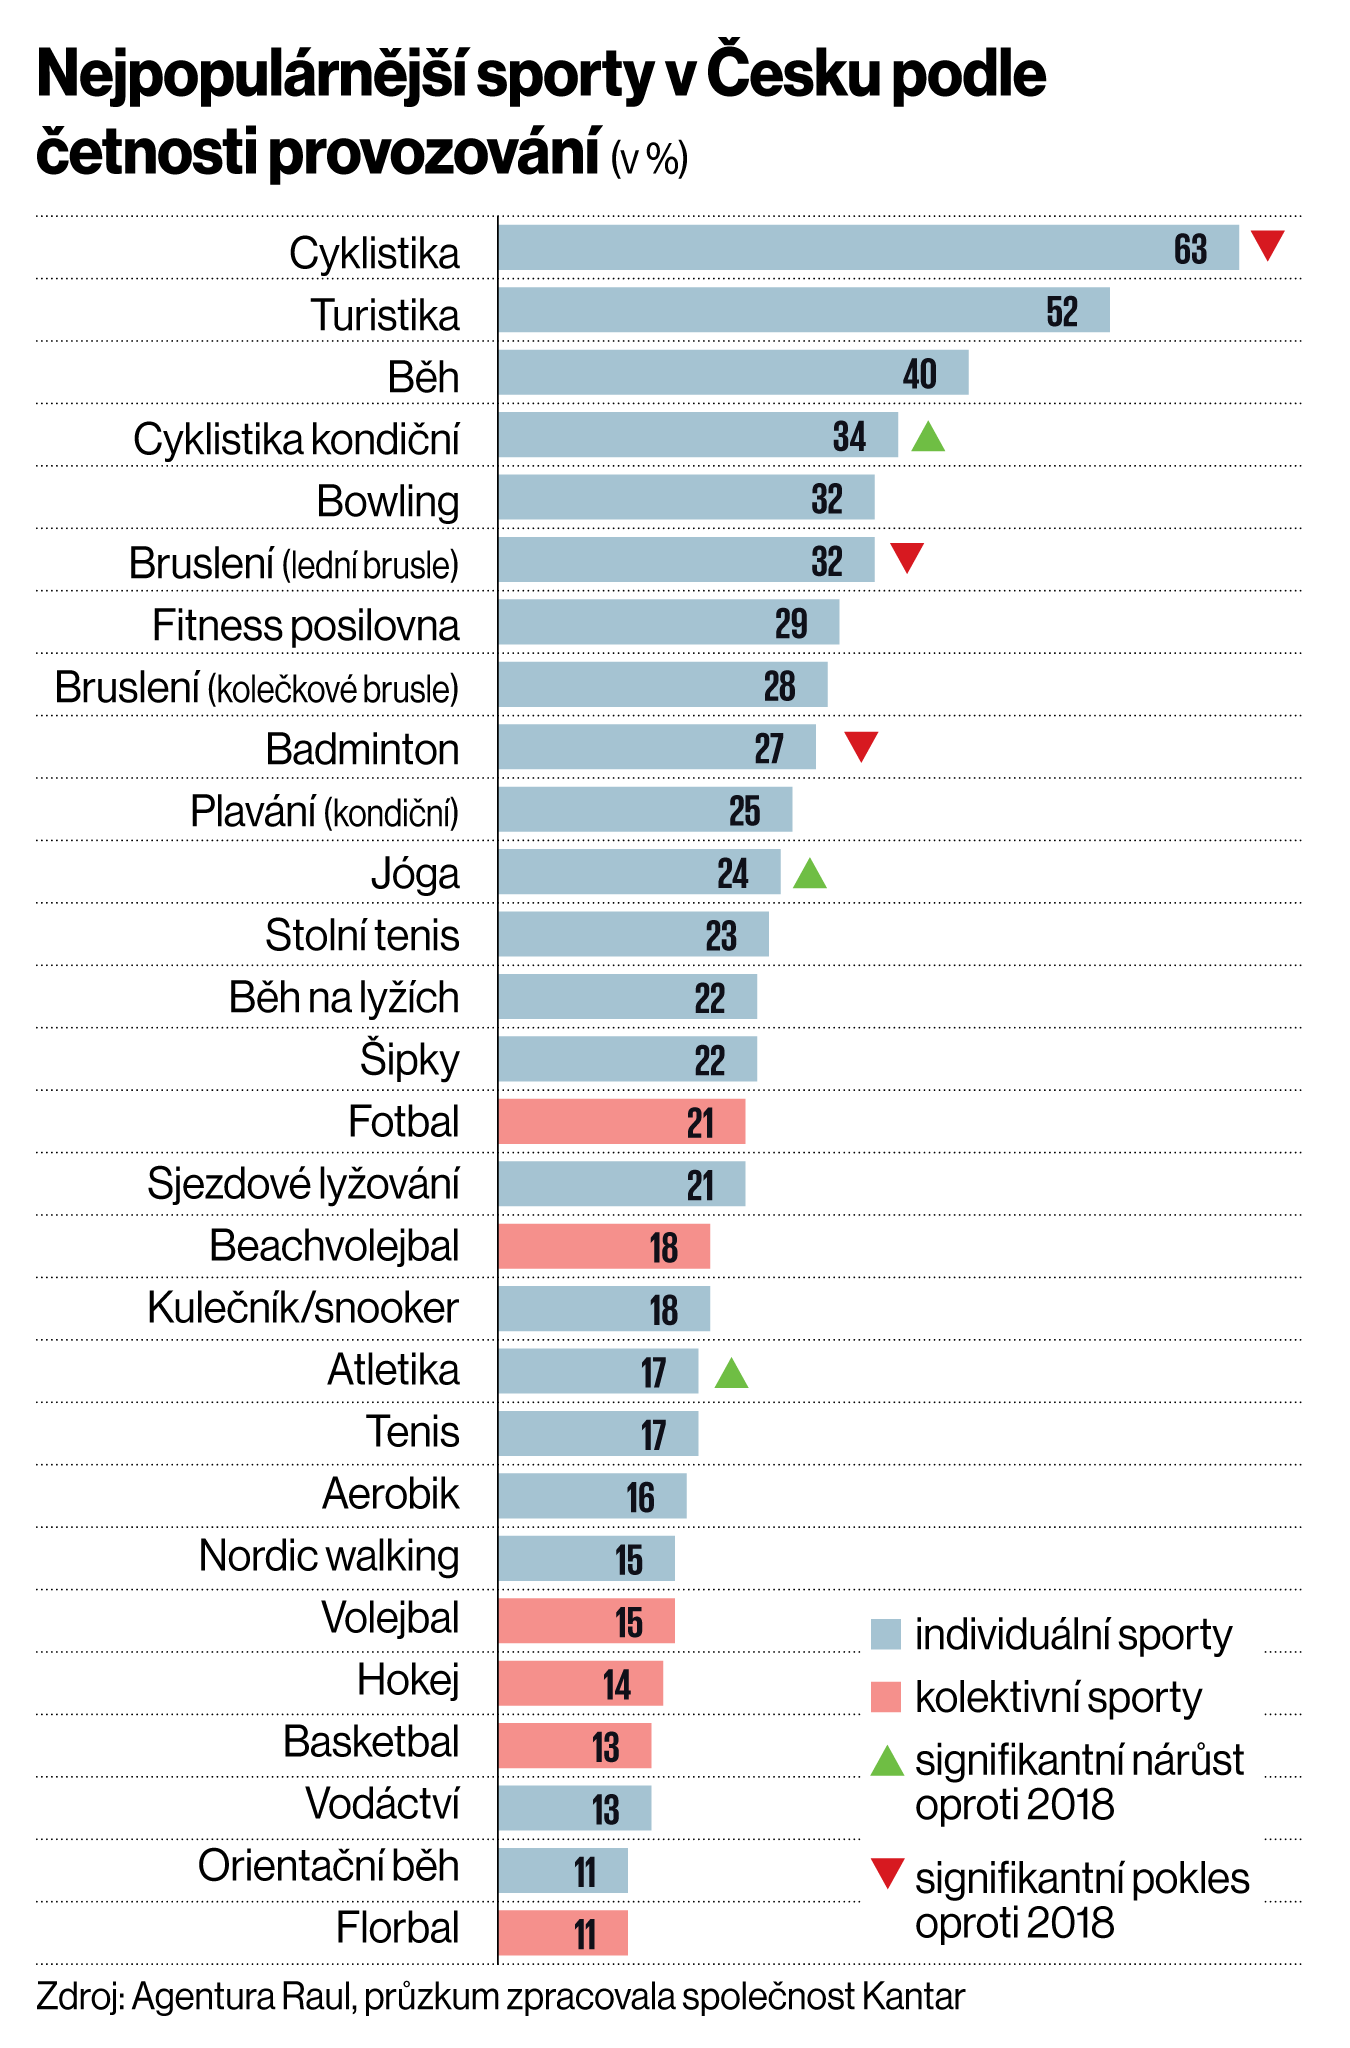 Nejpopulárnìjší sporty v Èesku podle èetnosti provozování